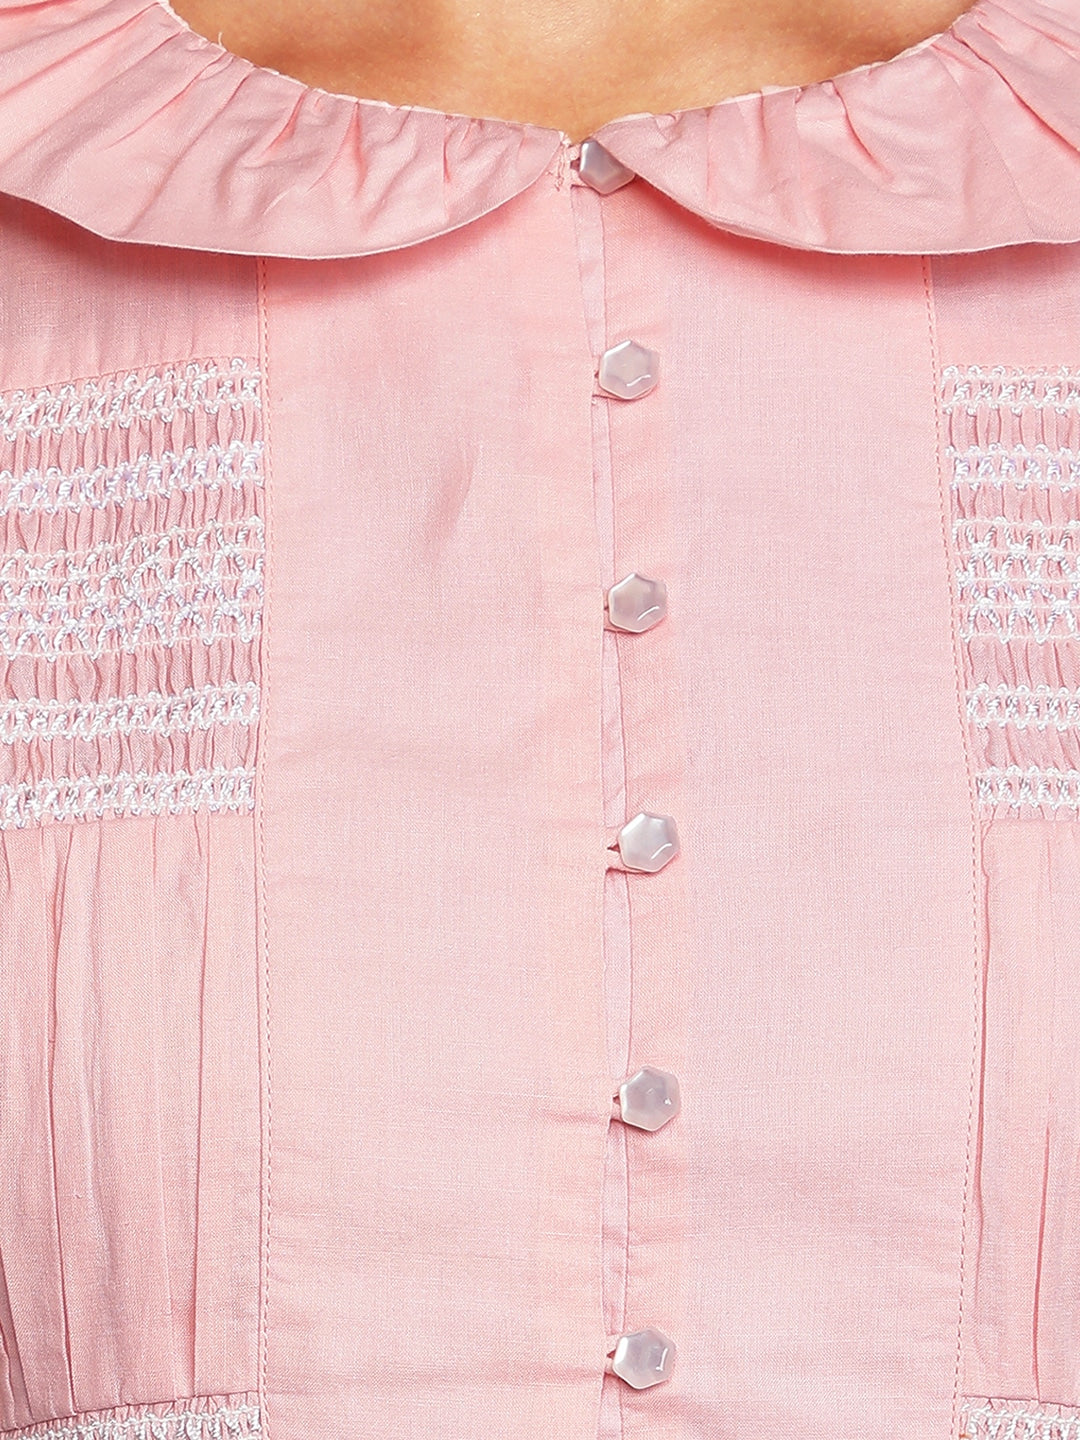 Blanc9 Pink Smocking Dress